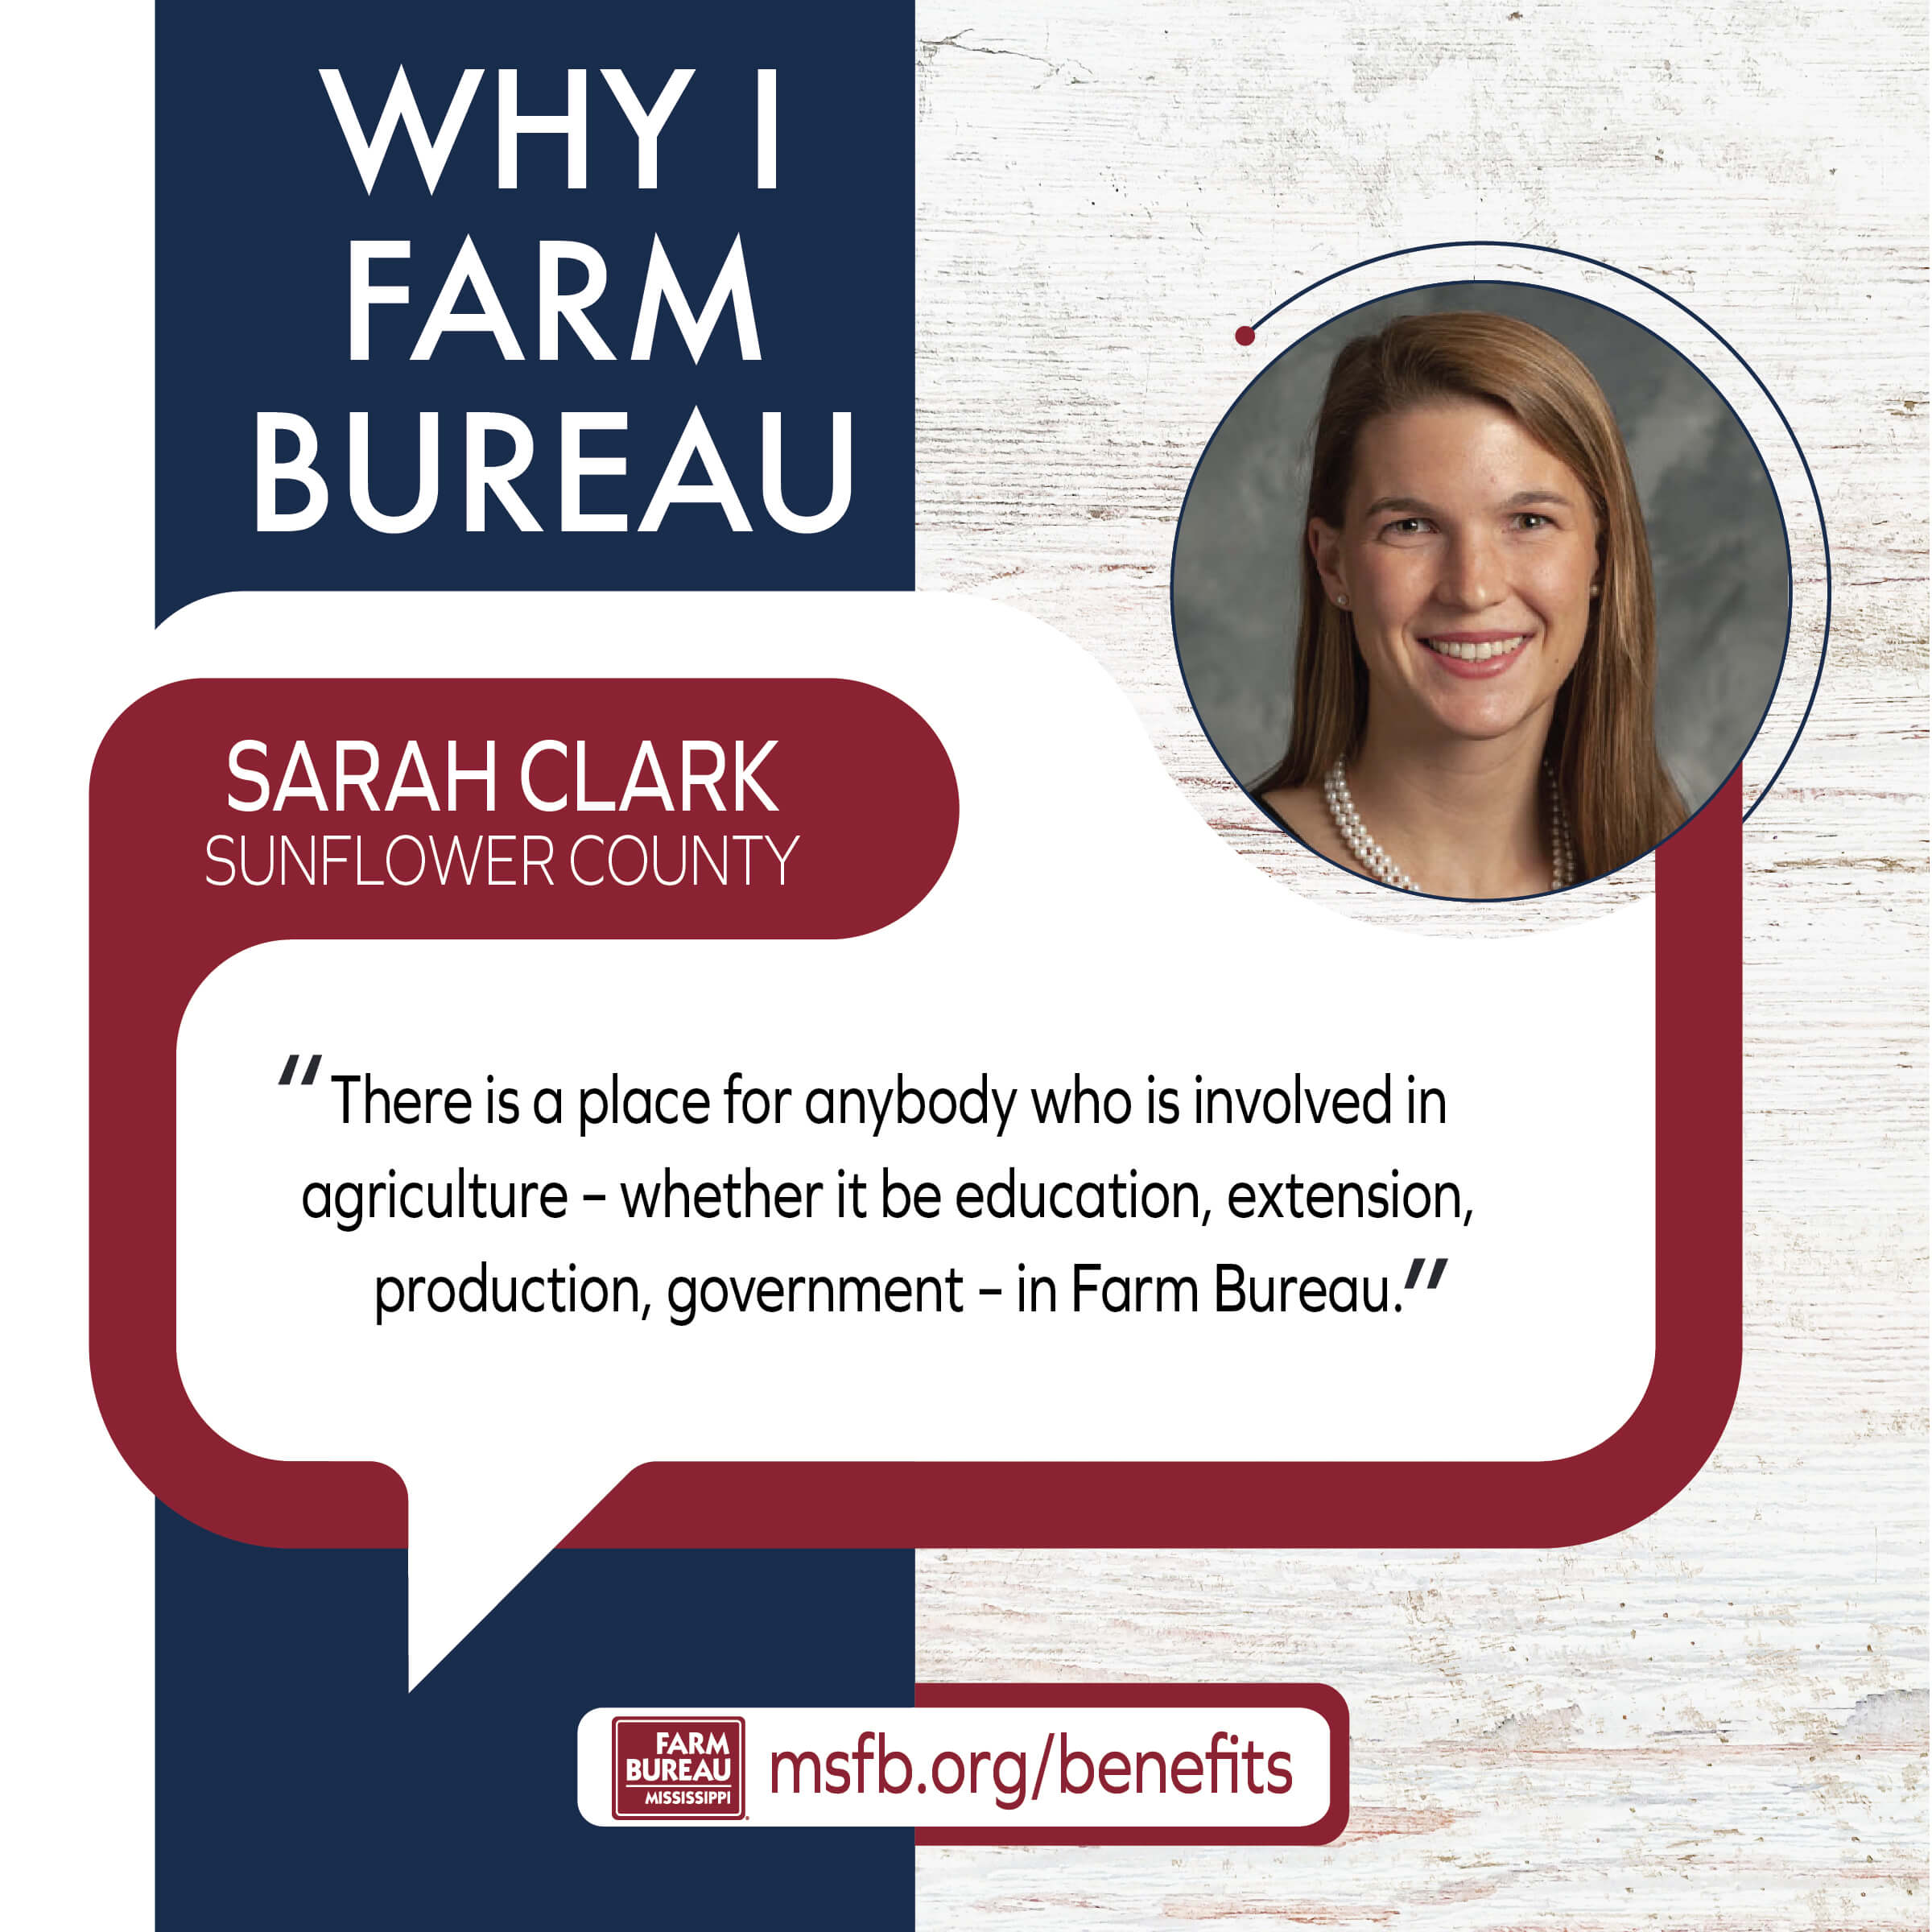 Why I Farm Bureau